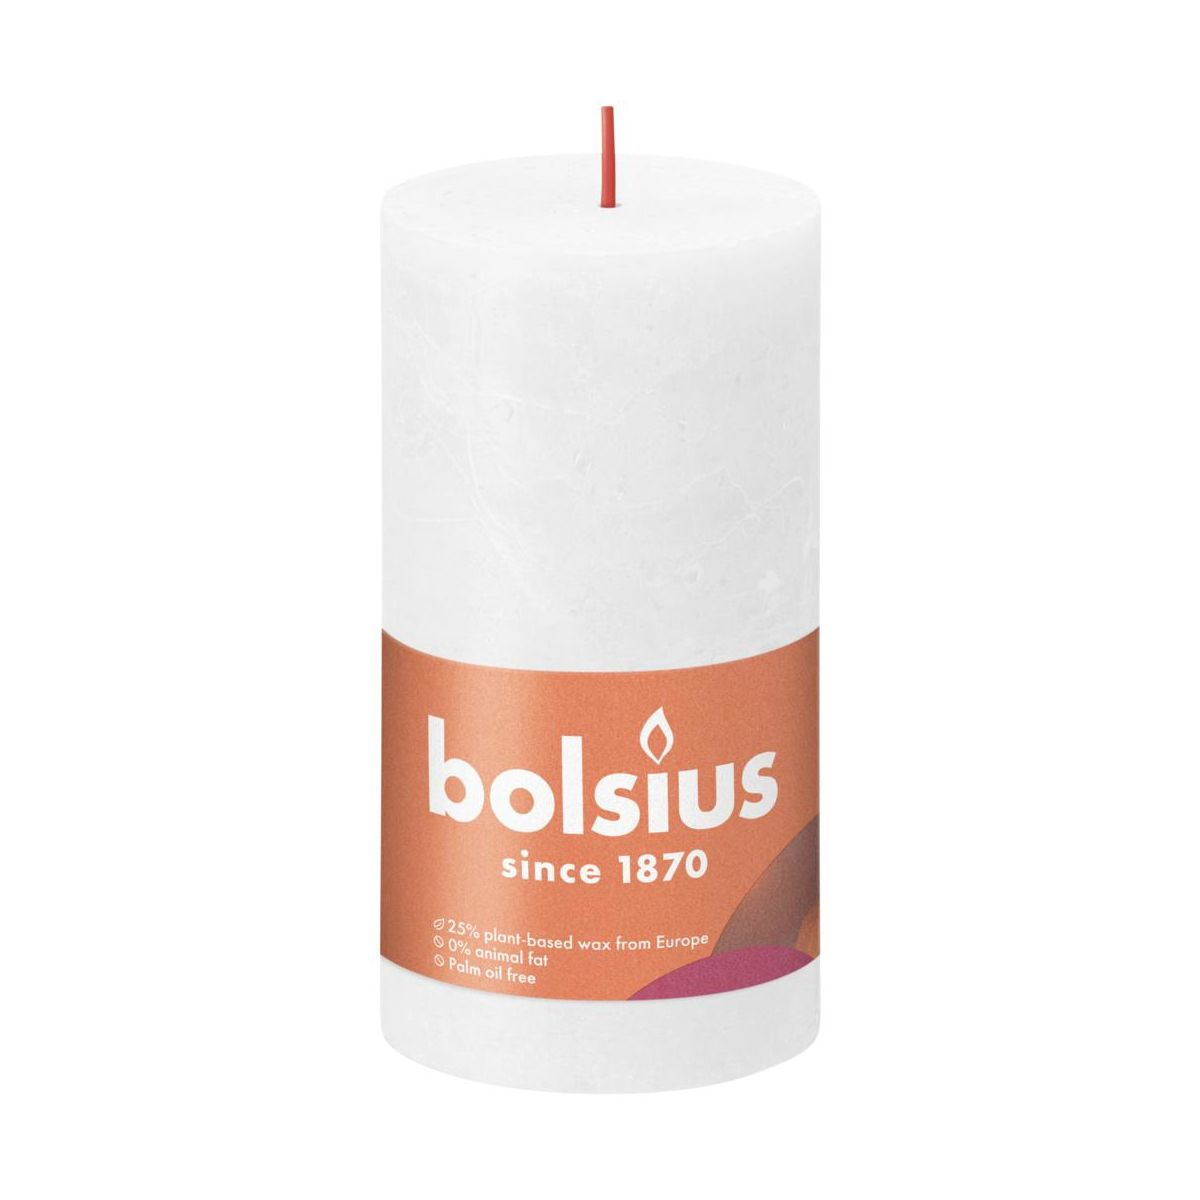 фото Свеча bolsius rustic 13х6,8 см shine облачно-белая